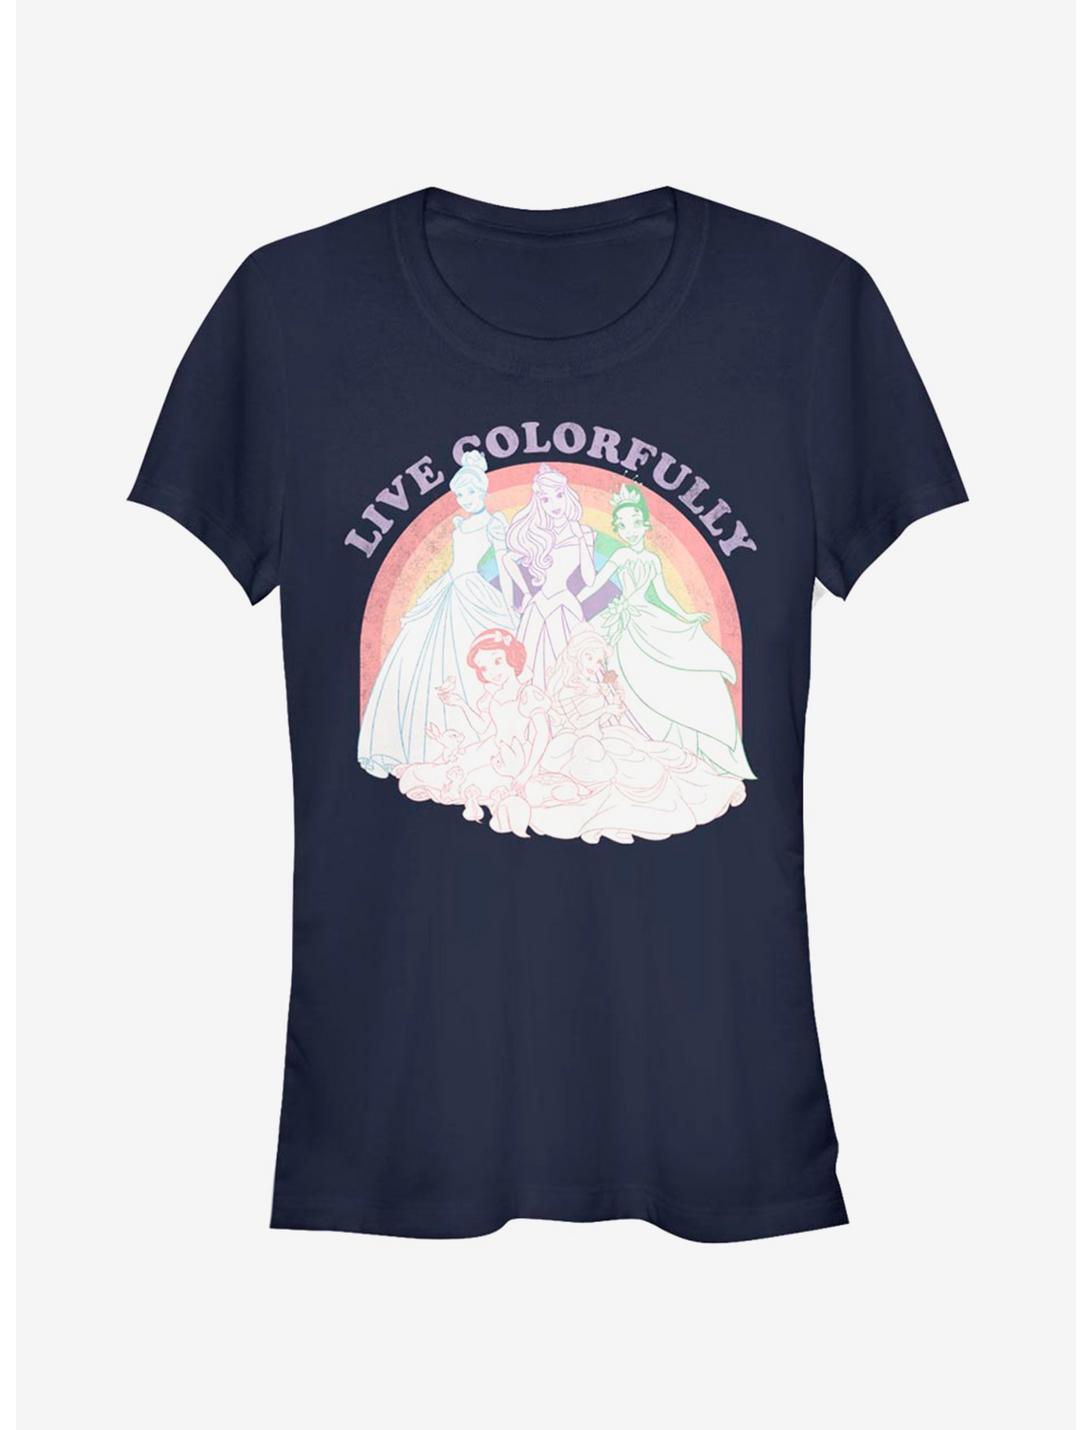 Disney Princess Rainbow Princess Girls T-Shirt, NAVY, hi-res